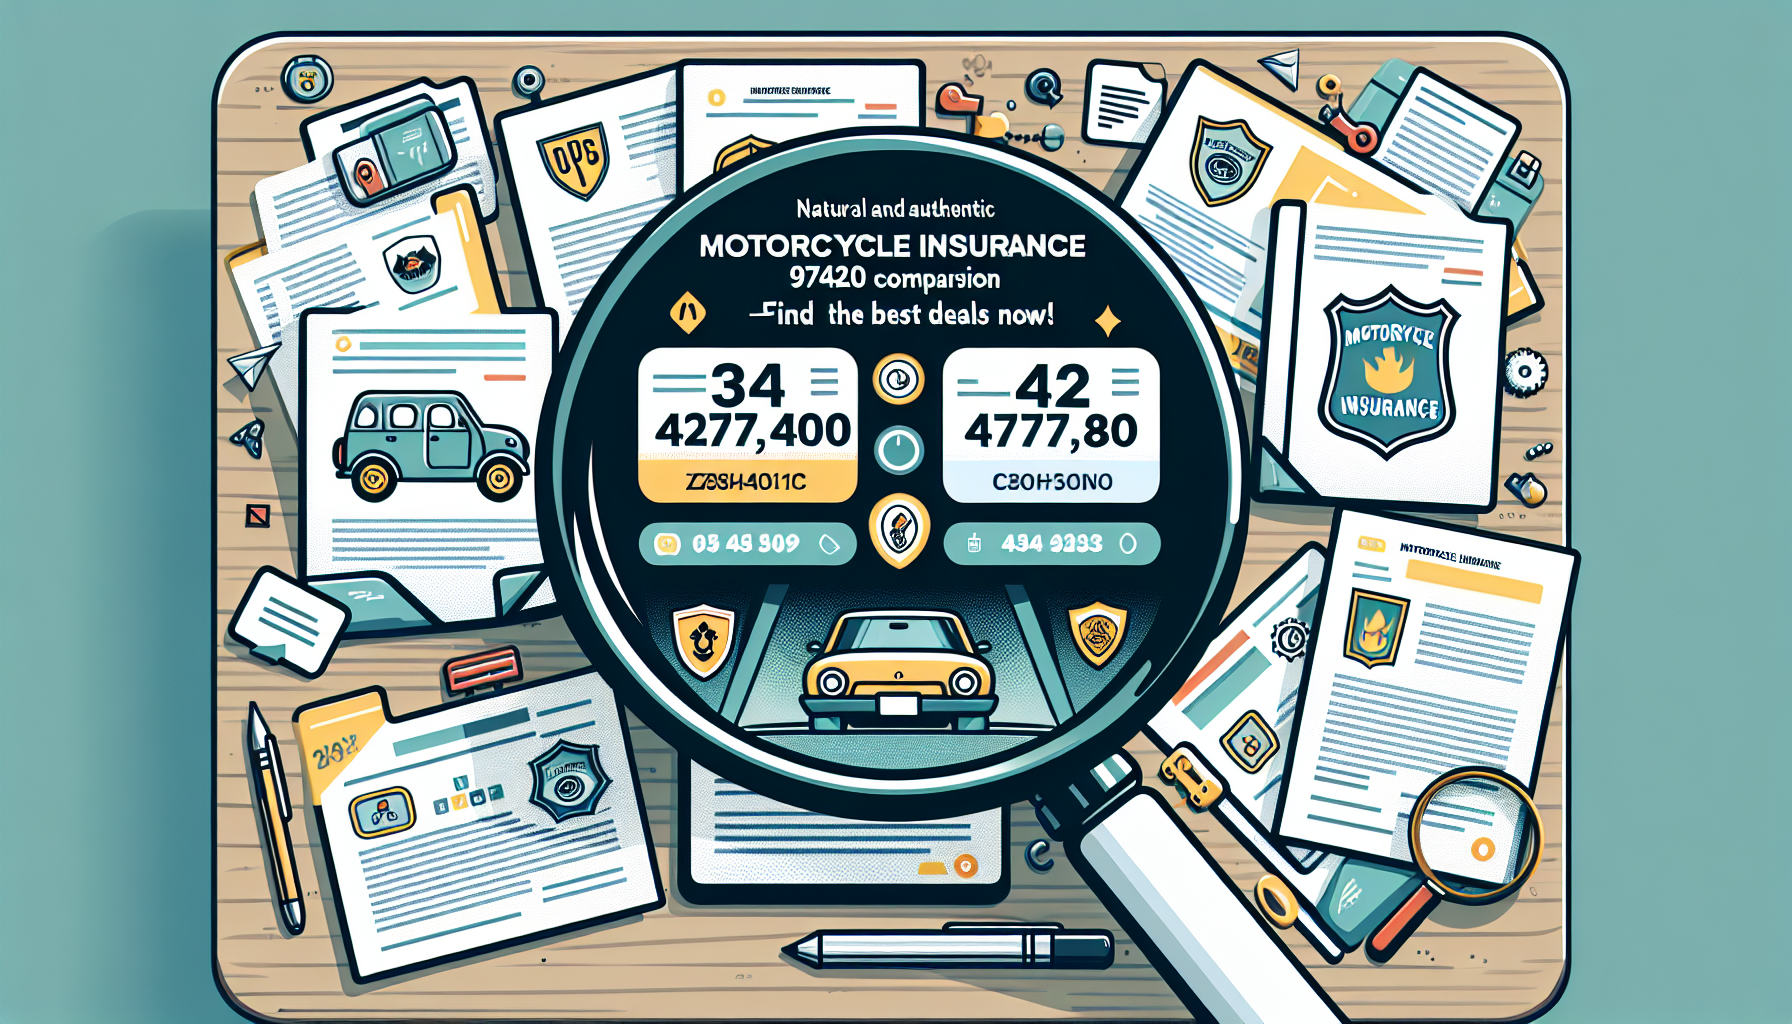 découvrez les avantages de l'assurance moto 97420 comparateur et obtenez les meilleures offres pour protéger votre véhicule et votre sécurité sur la route.